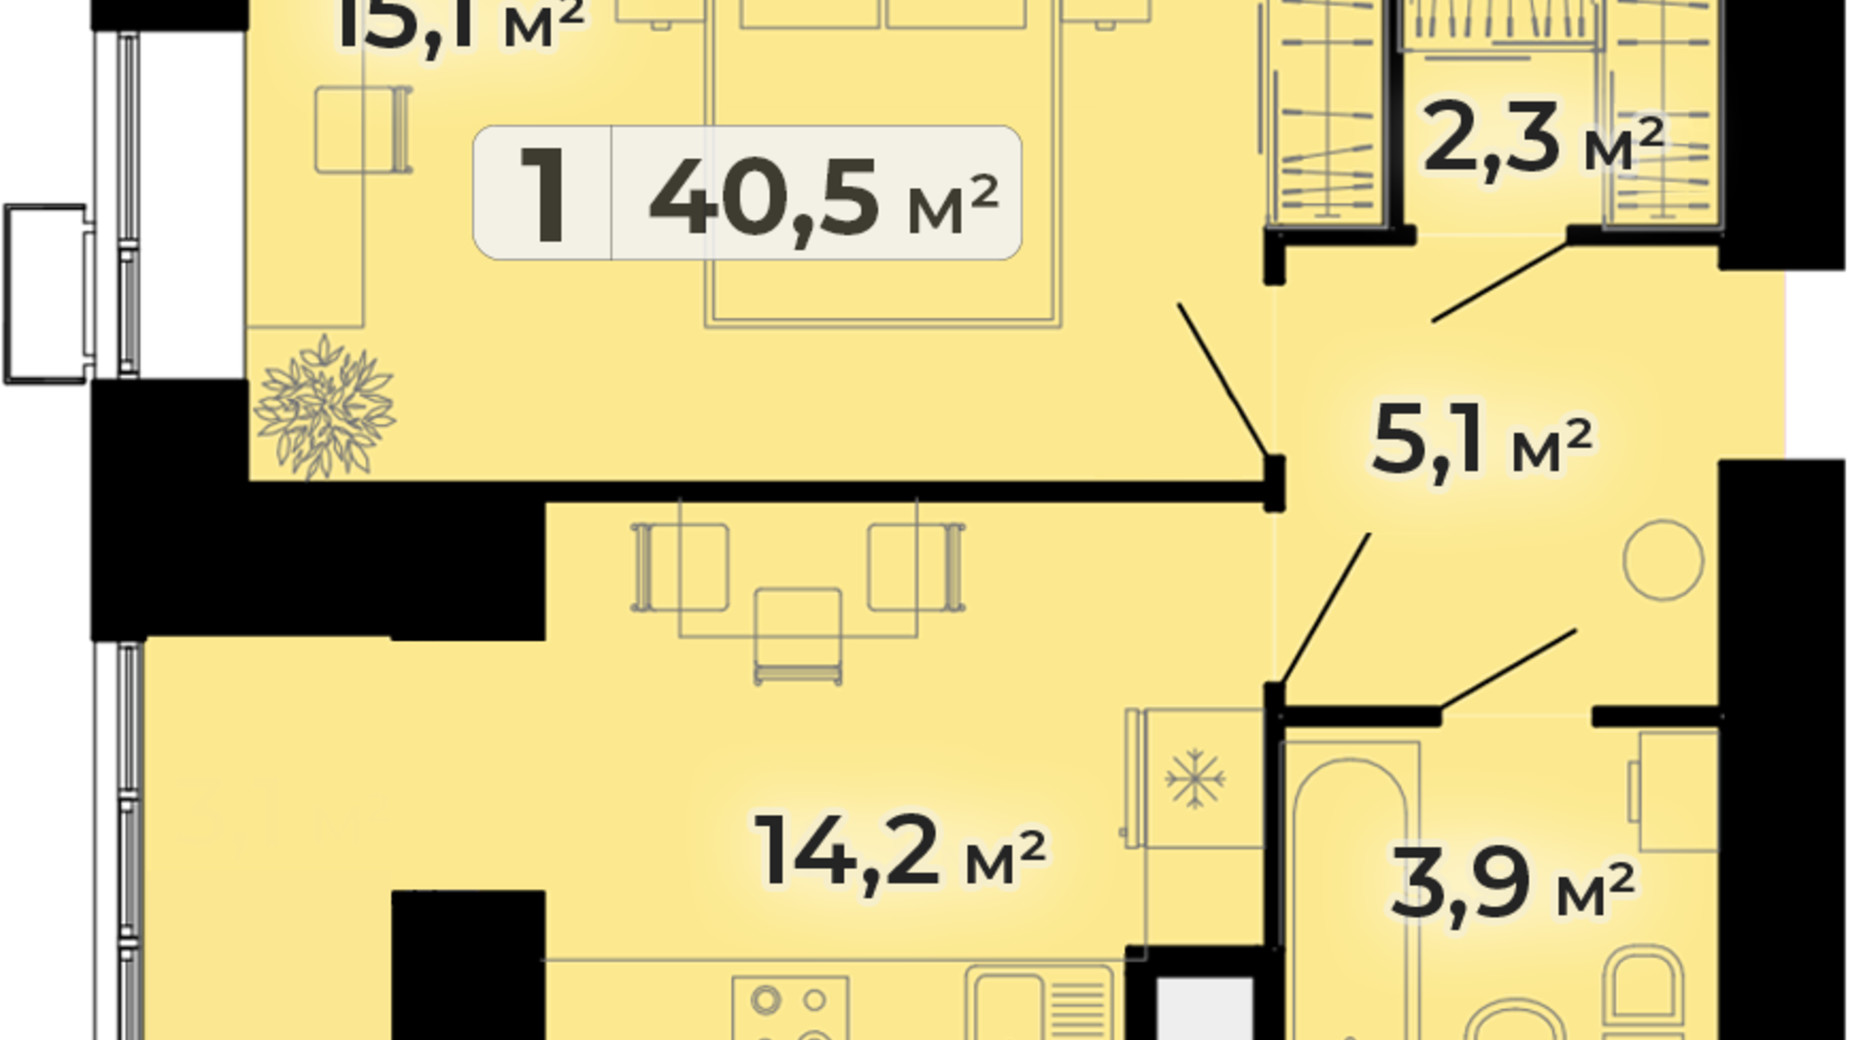 Планировка 1-комнатной квартиры в ЖК Комфорт Парк 40.5 м², фото 609129